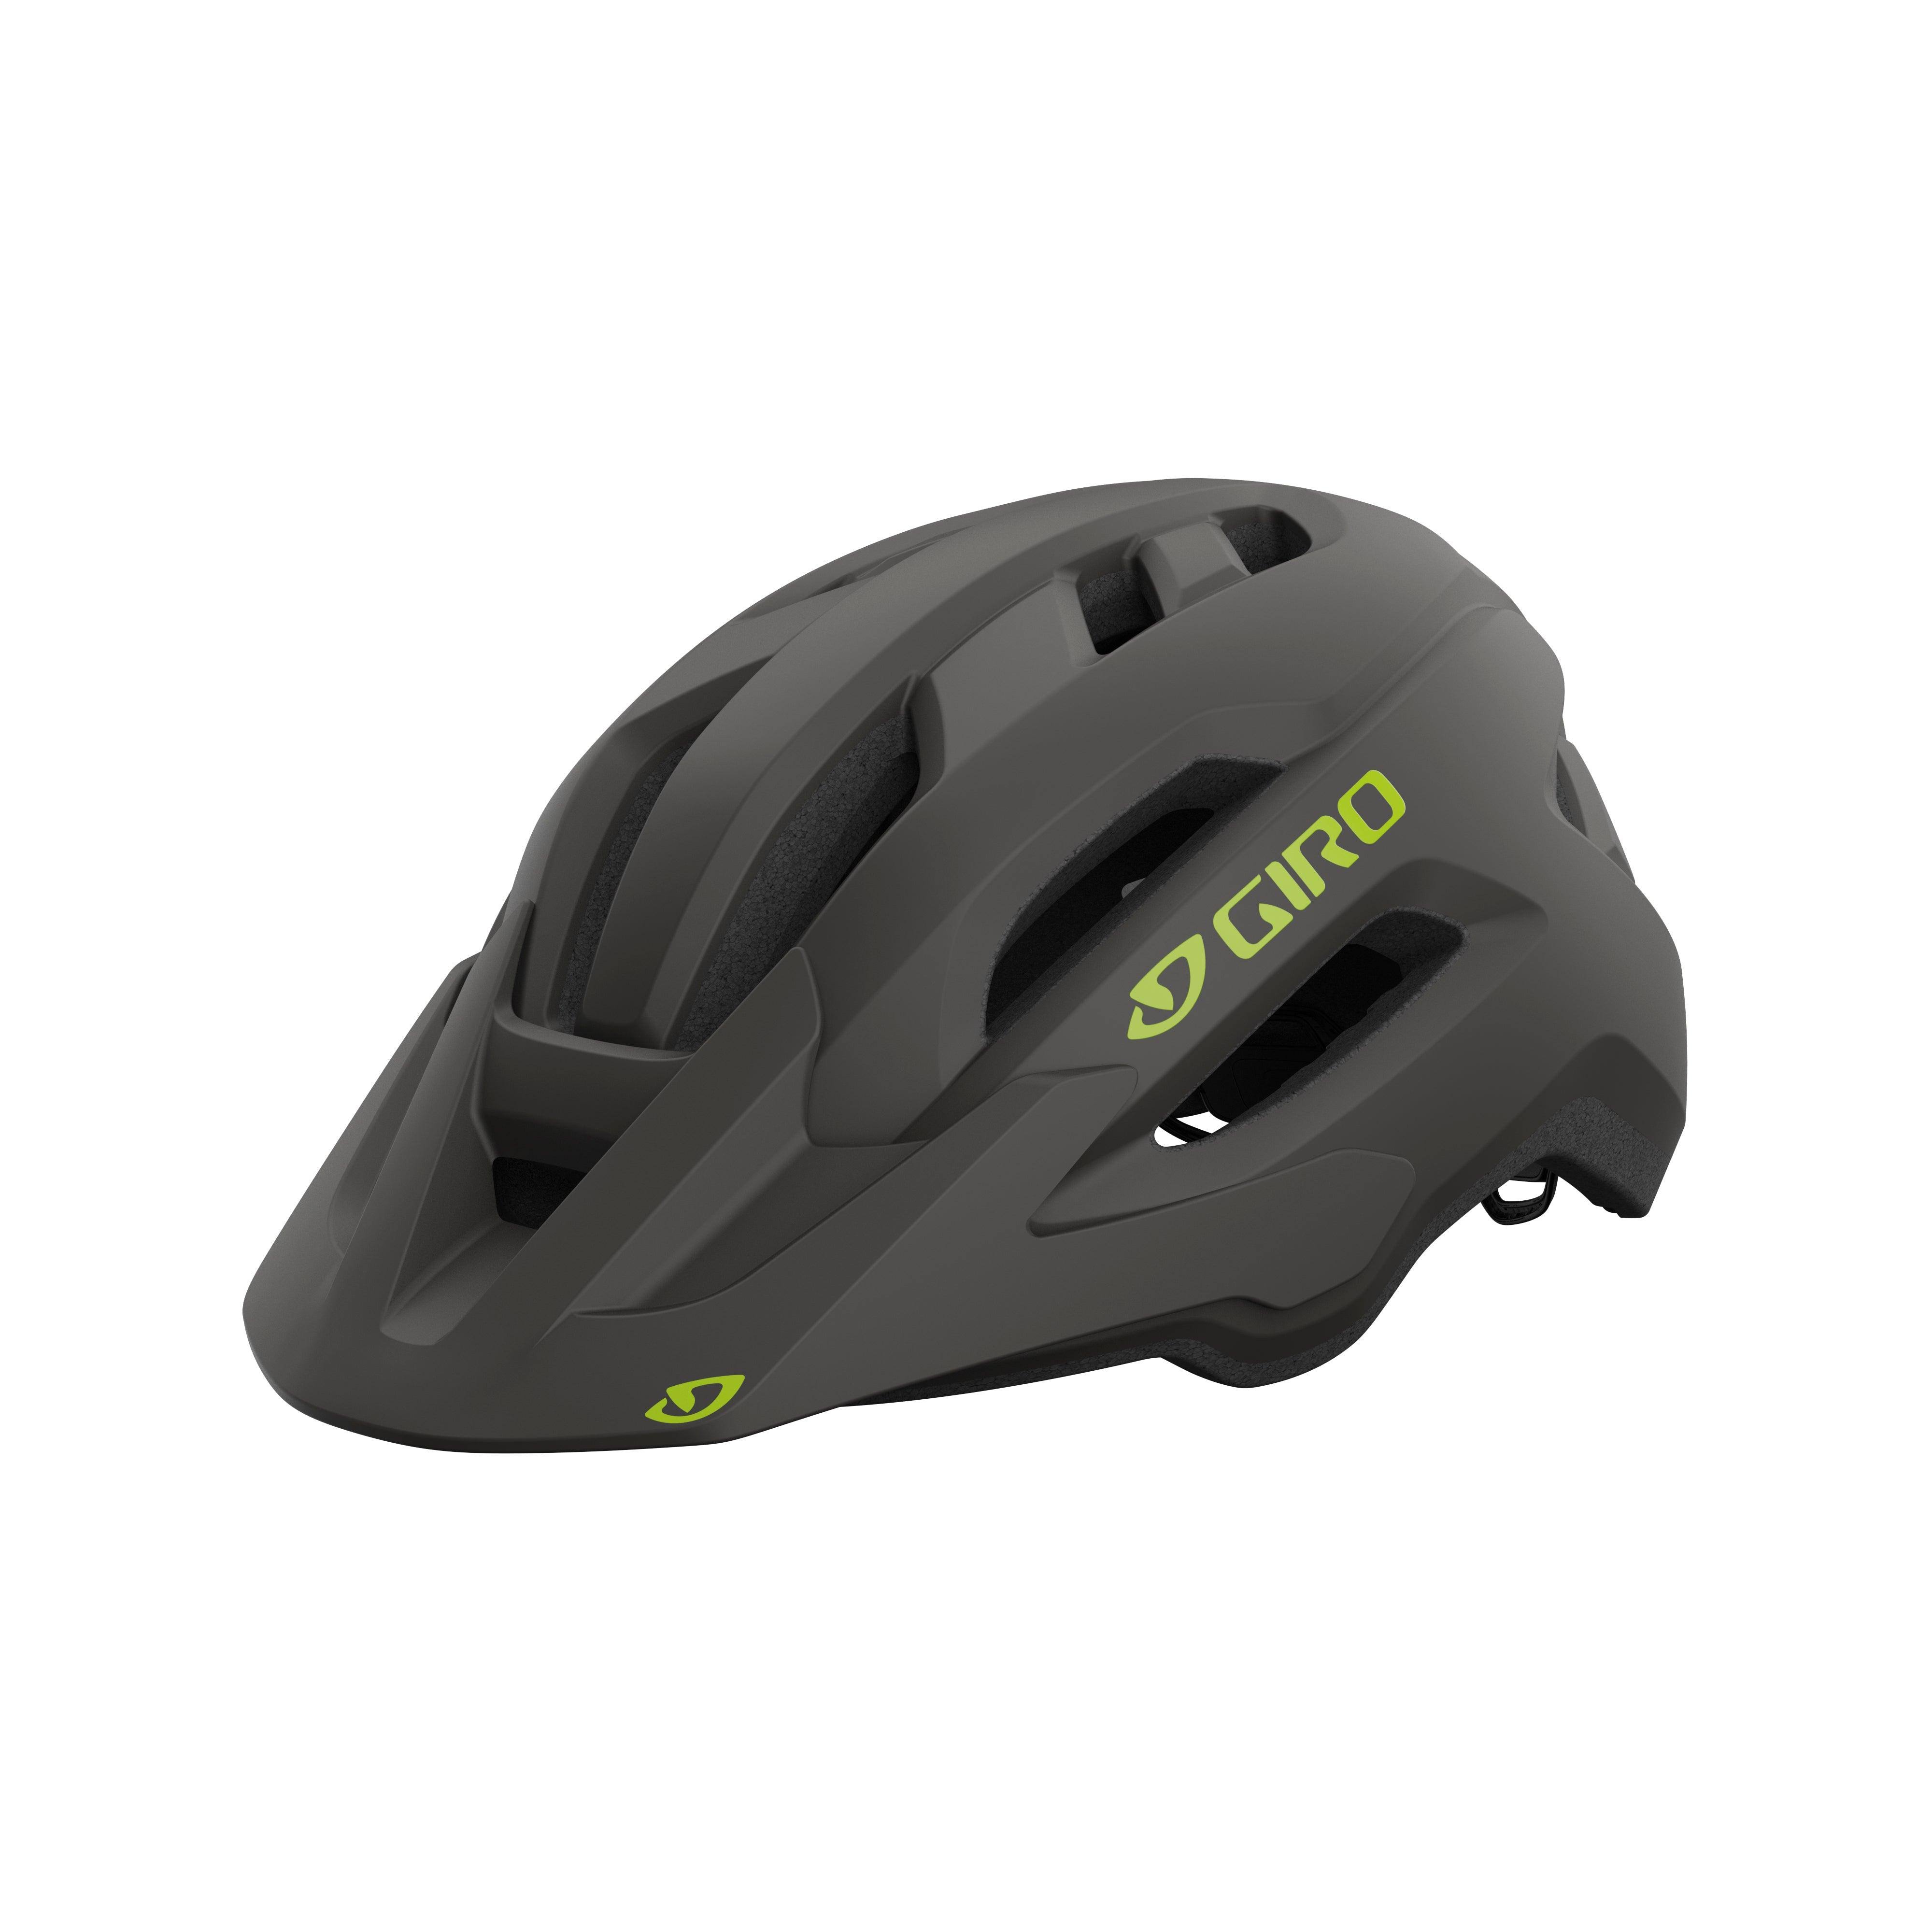 Giro Fixture 2 MIPS Helmet's Breezy Ventilation Roc Loc Sport With EPS Liner, Black / Universal Adult